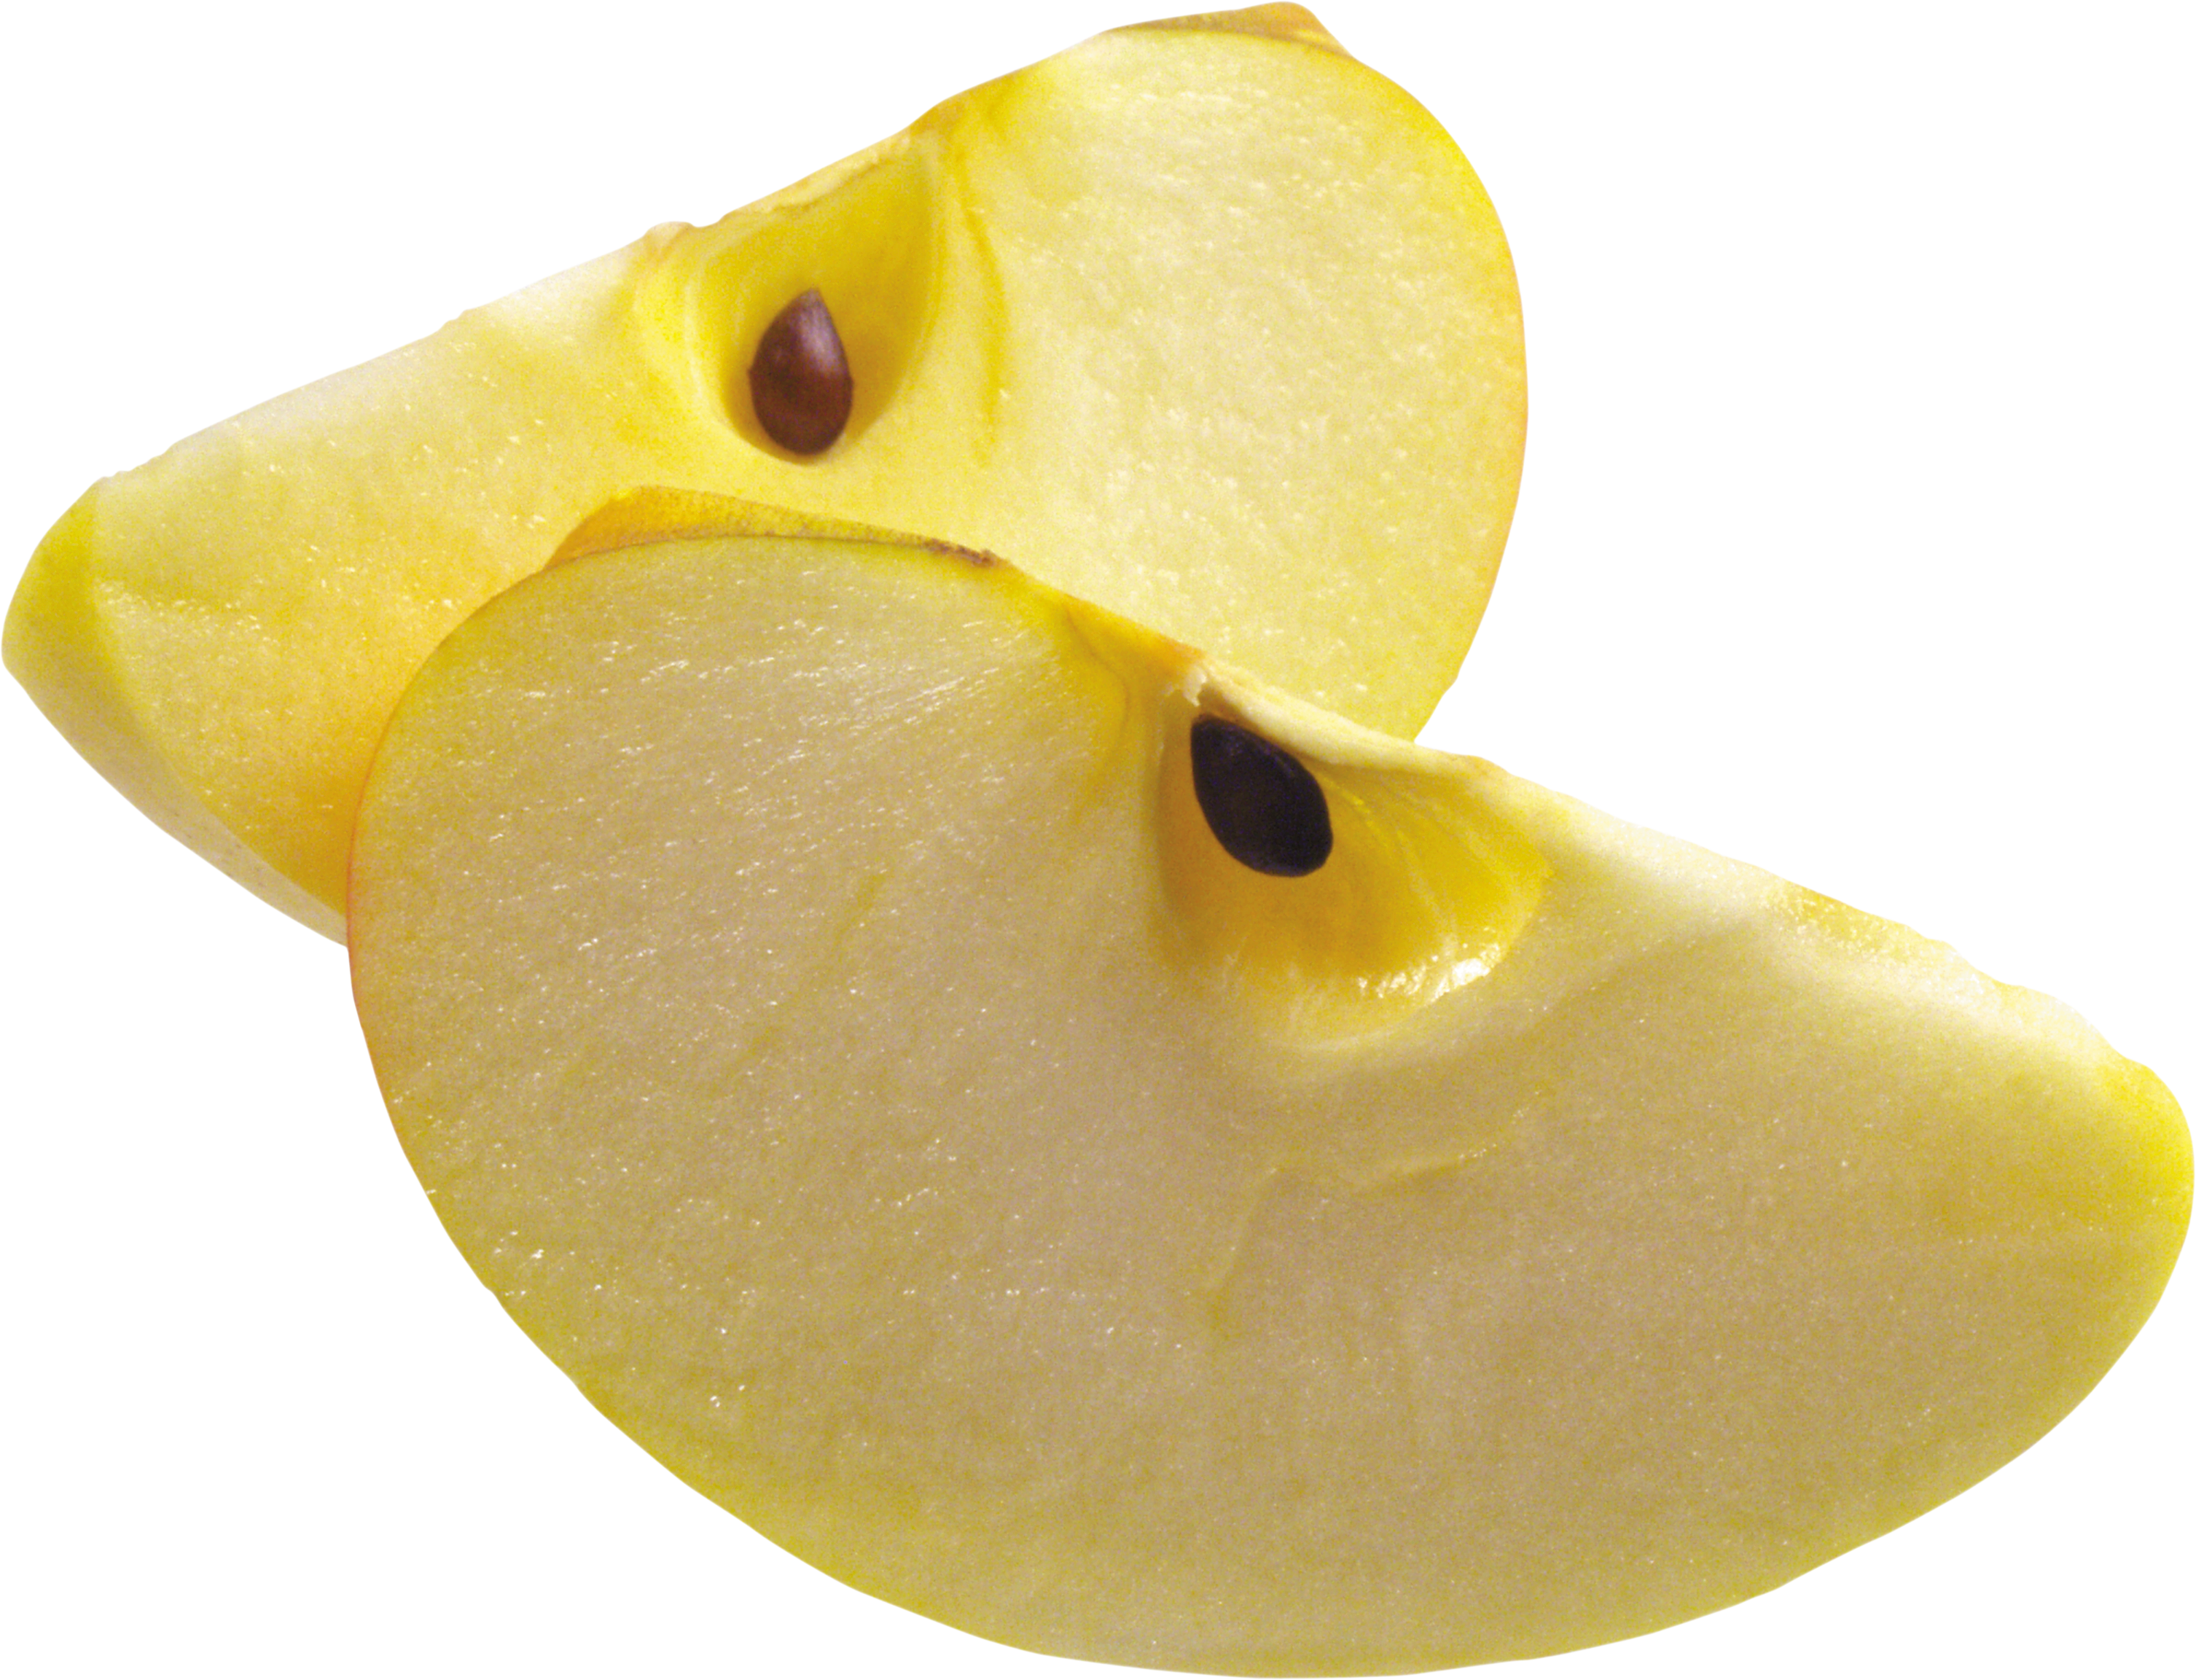 पीले सेब का एक टुकड़ा